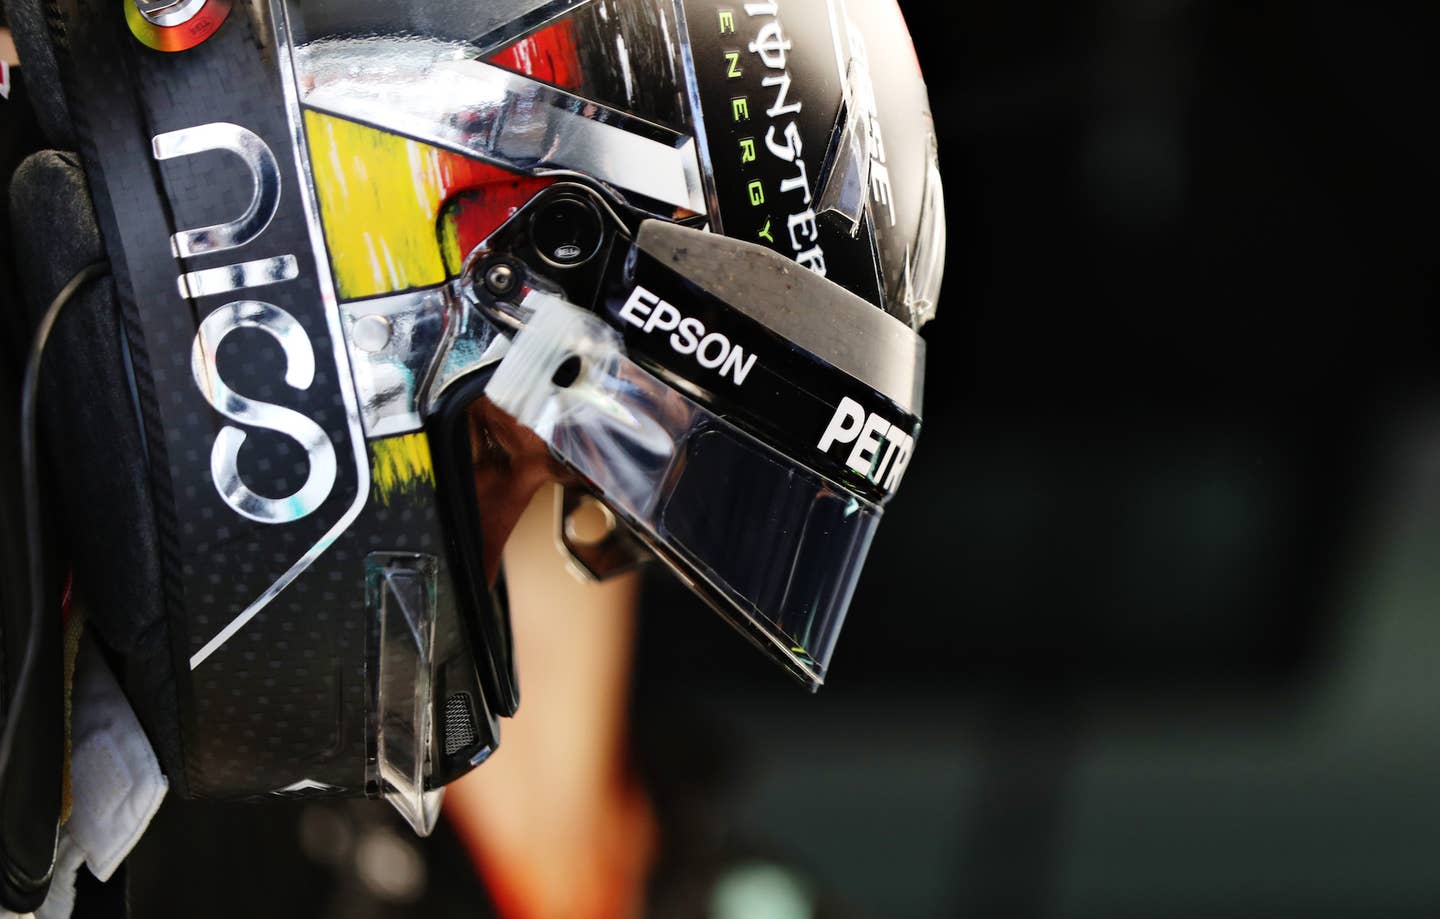 F1 German Grand Prix: Heartbreak for Rosberg at Home